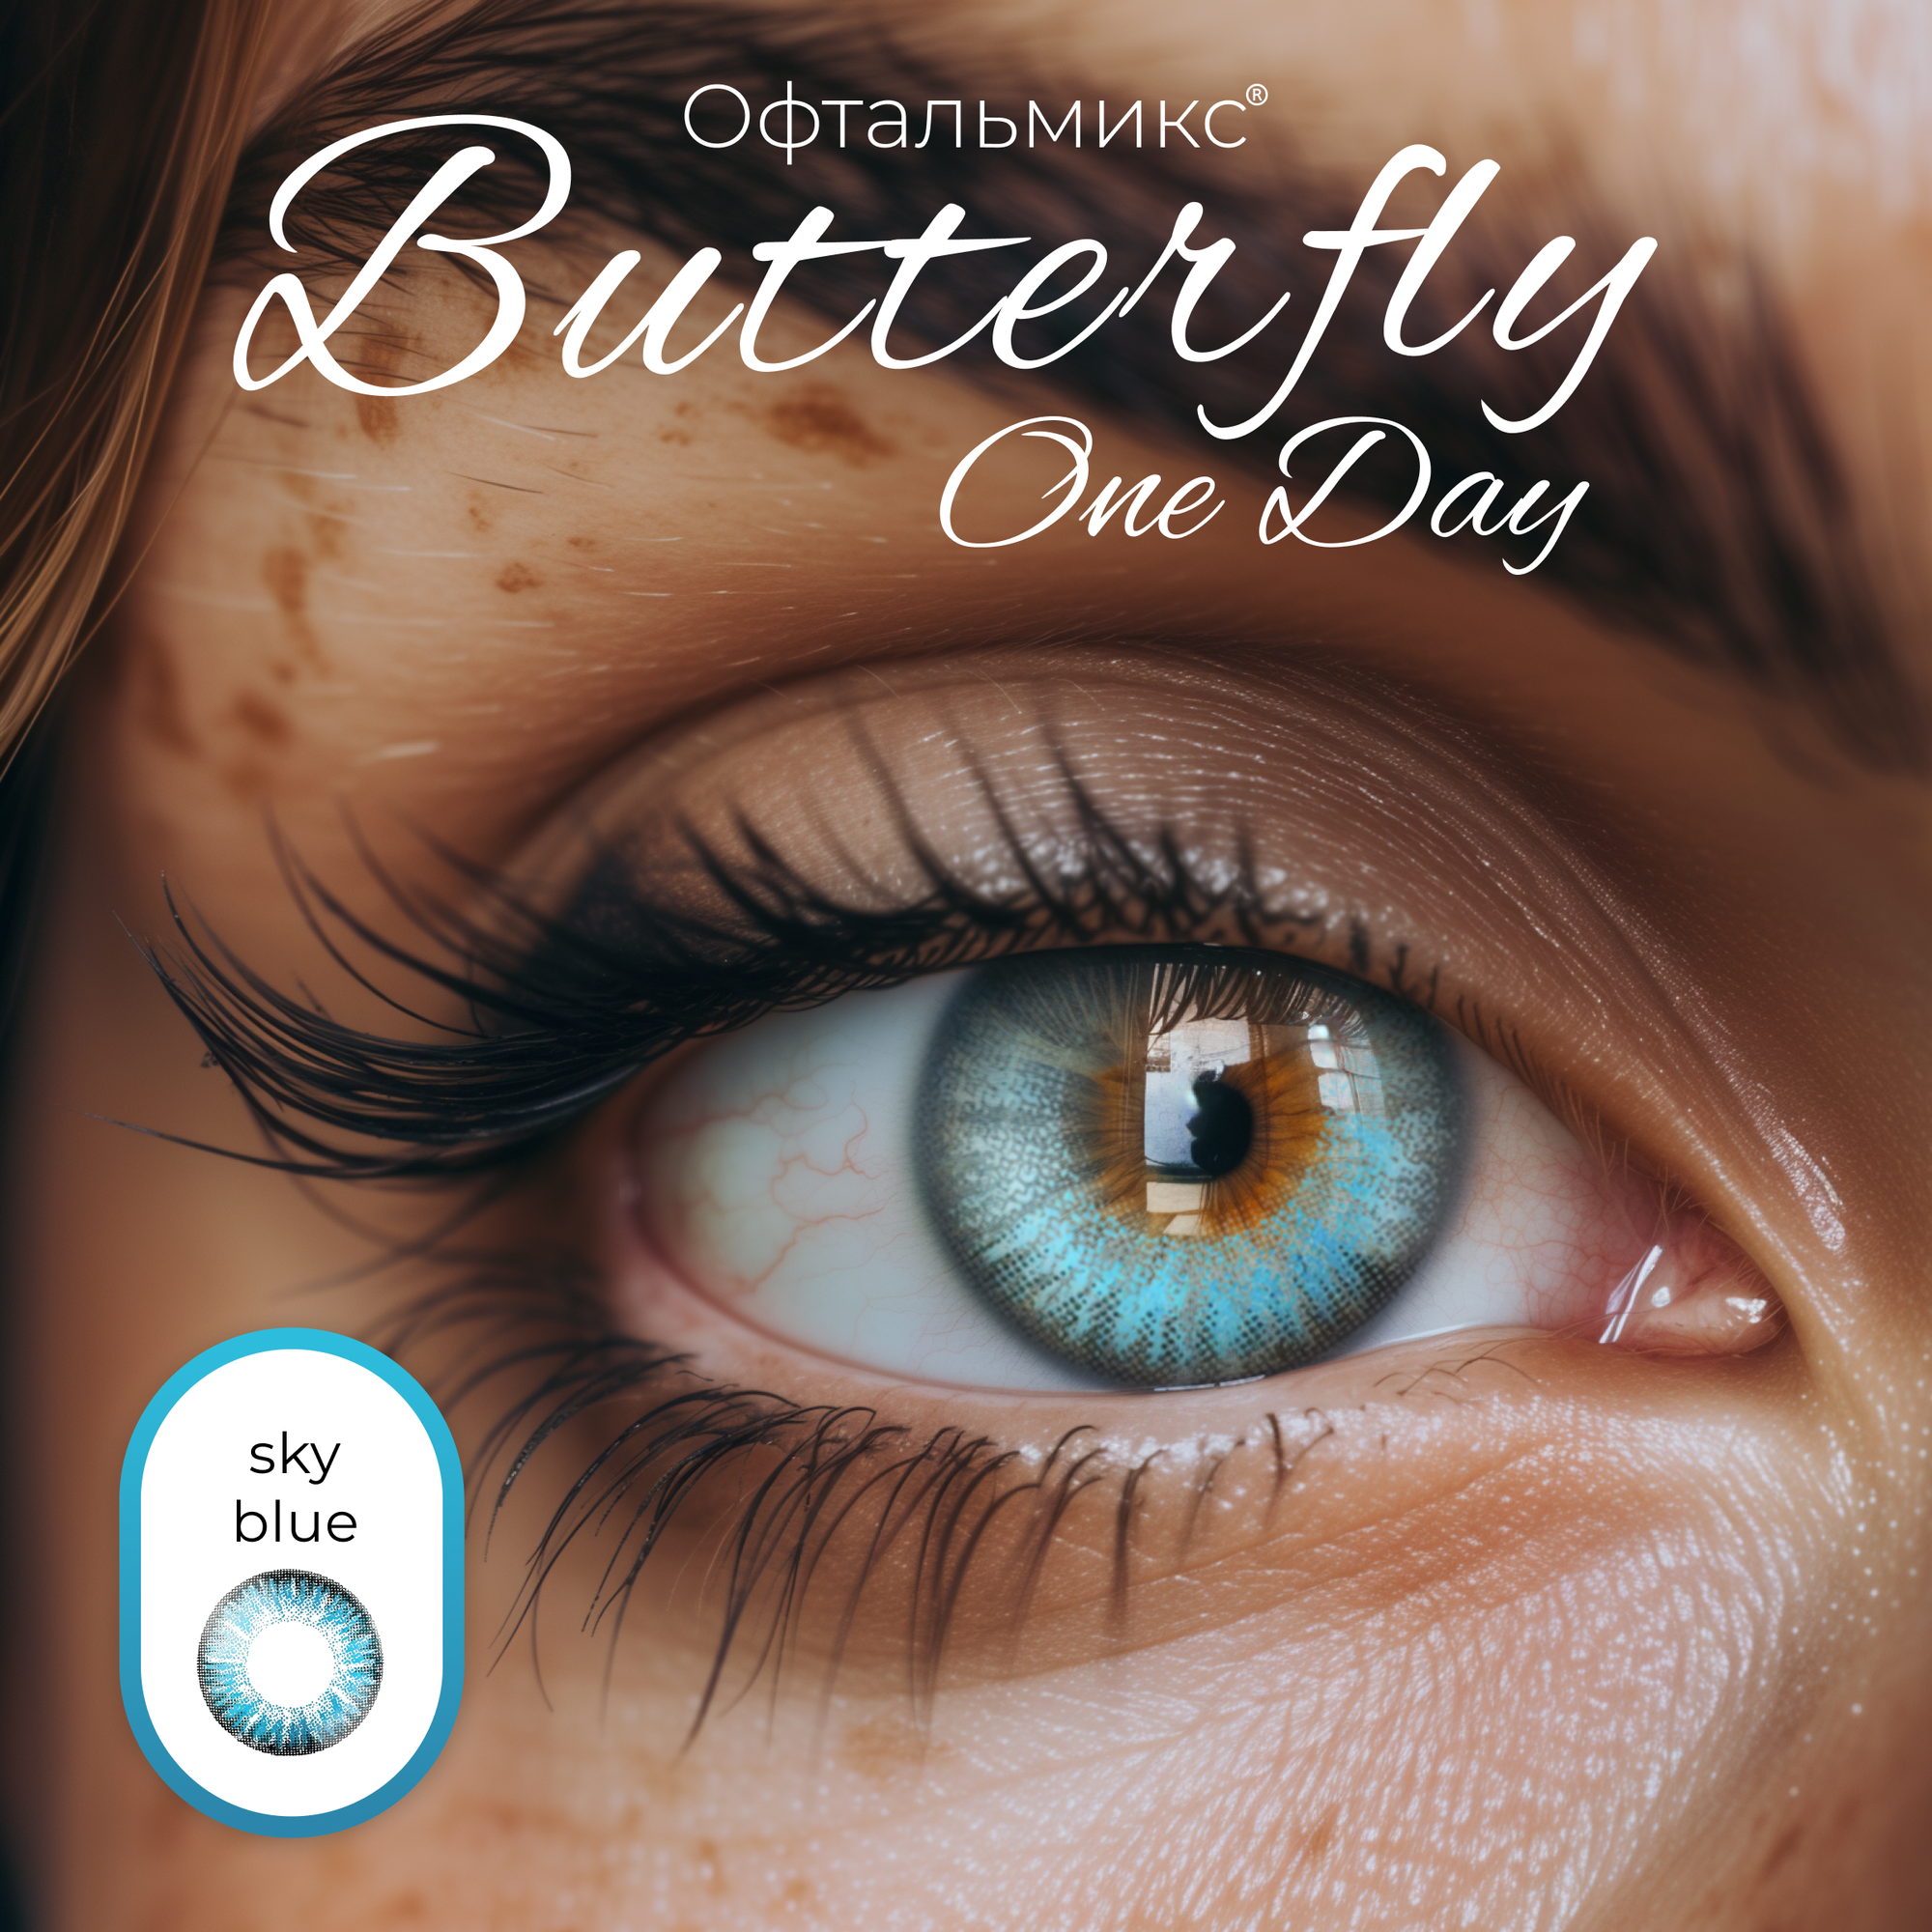 Цветные контактные линзы Офтальмикс Butterfly One Day (2 линзы) -2.00 R 8.6 Sky Blue (Голубой)